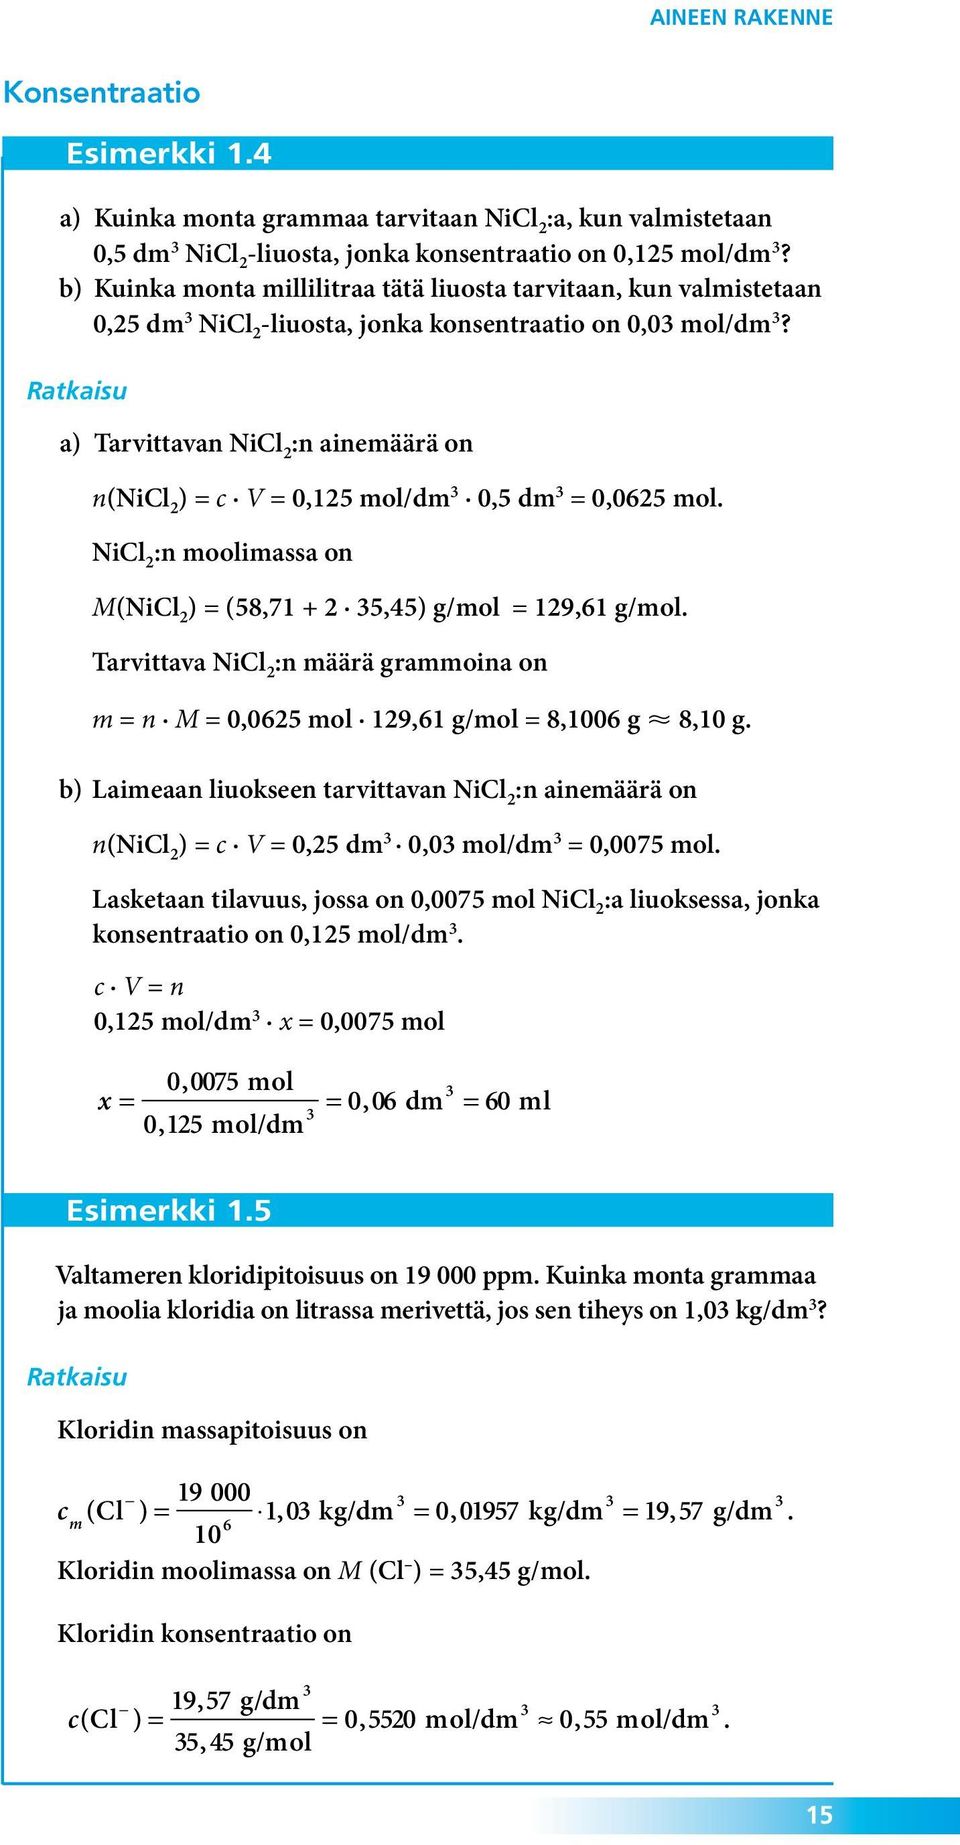 Ratkaisu a) Tarvittavan NiCl 2 :n ainemäärä on n(nicl 2 ) = c V = 0,125 mol/dm 3 0,5 dm 3 = 0,0625 mol. NiCl 2 :n moolimassa on M(NiCl 2 ) = (58,71 + 2 35,45) g/mol = 129,61 g/mol.